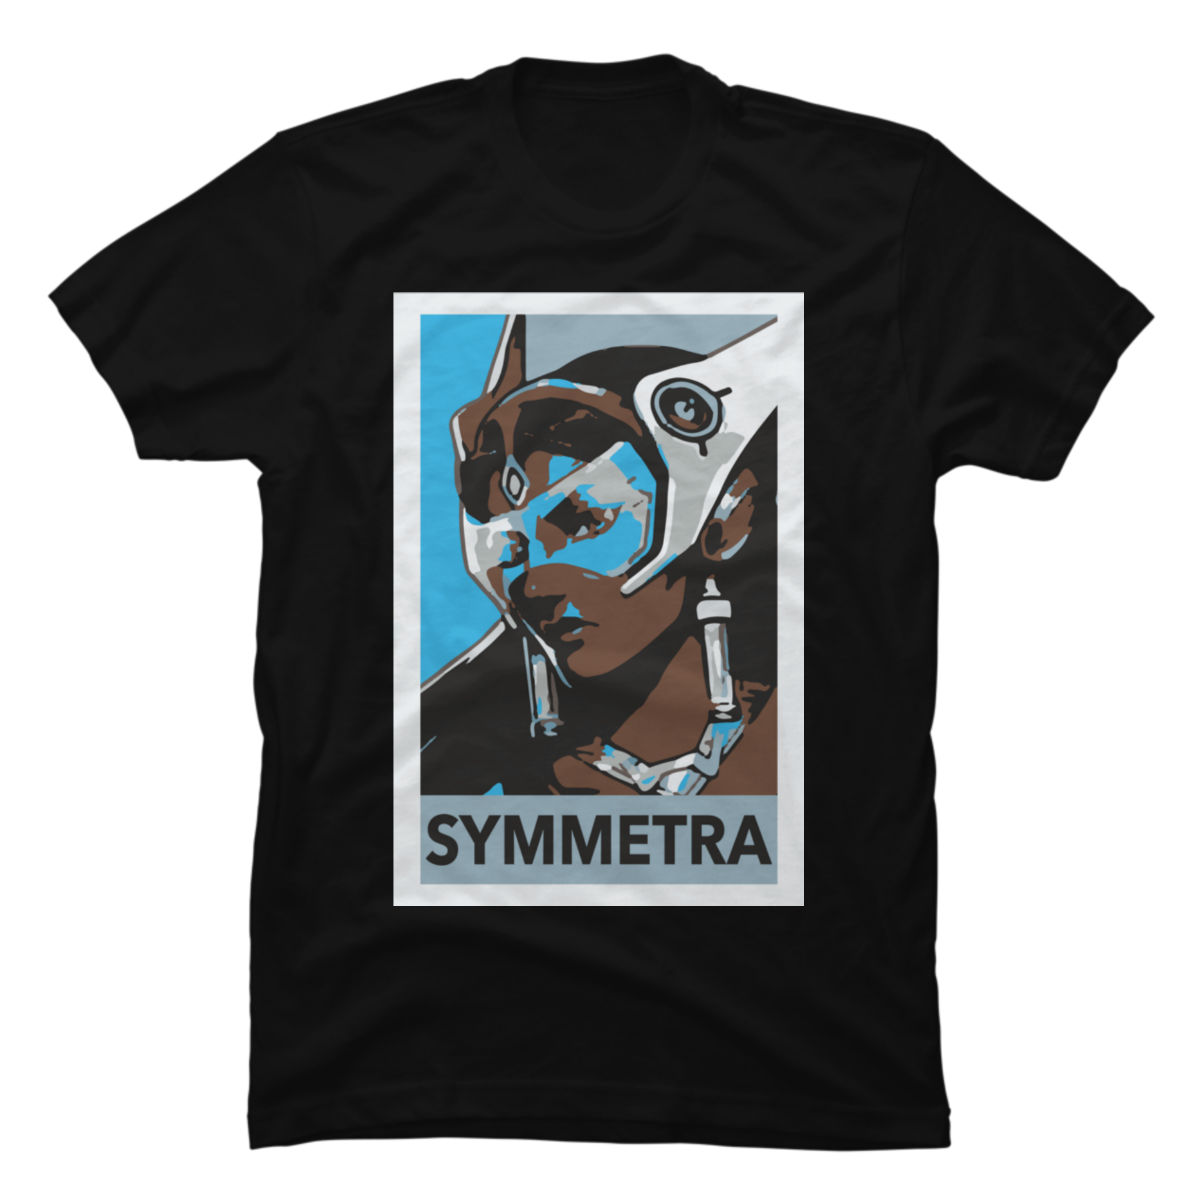 symmetra shirt